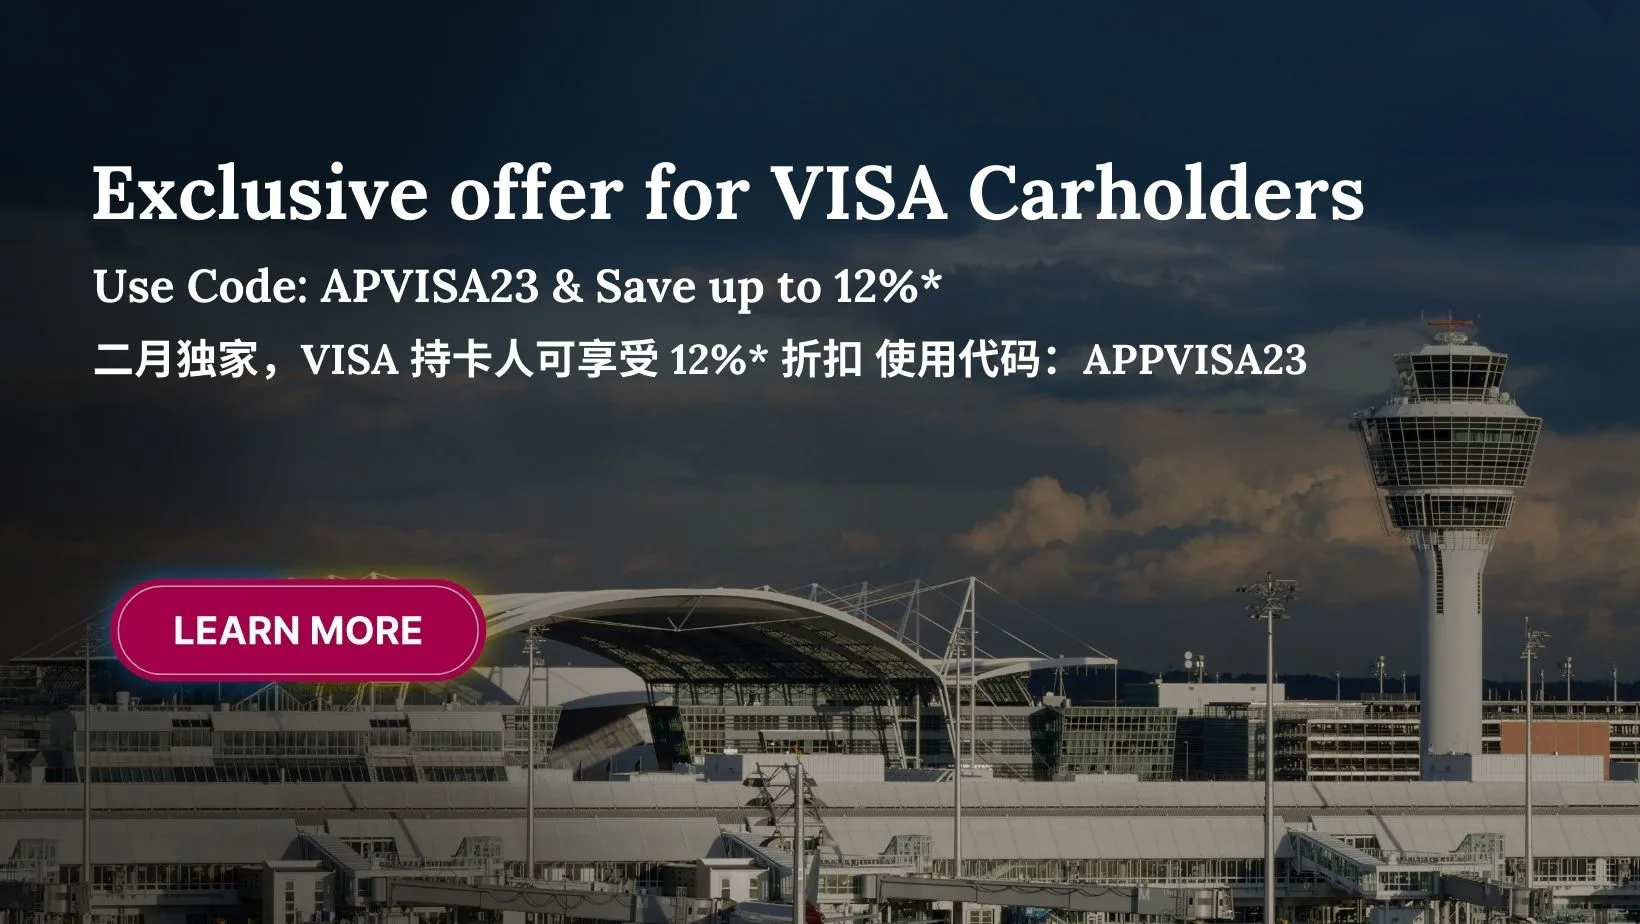 Qatar Airways CN Exclusive VISA Offer Campaign - Save 12%